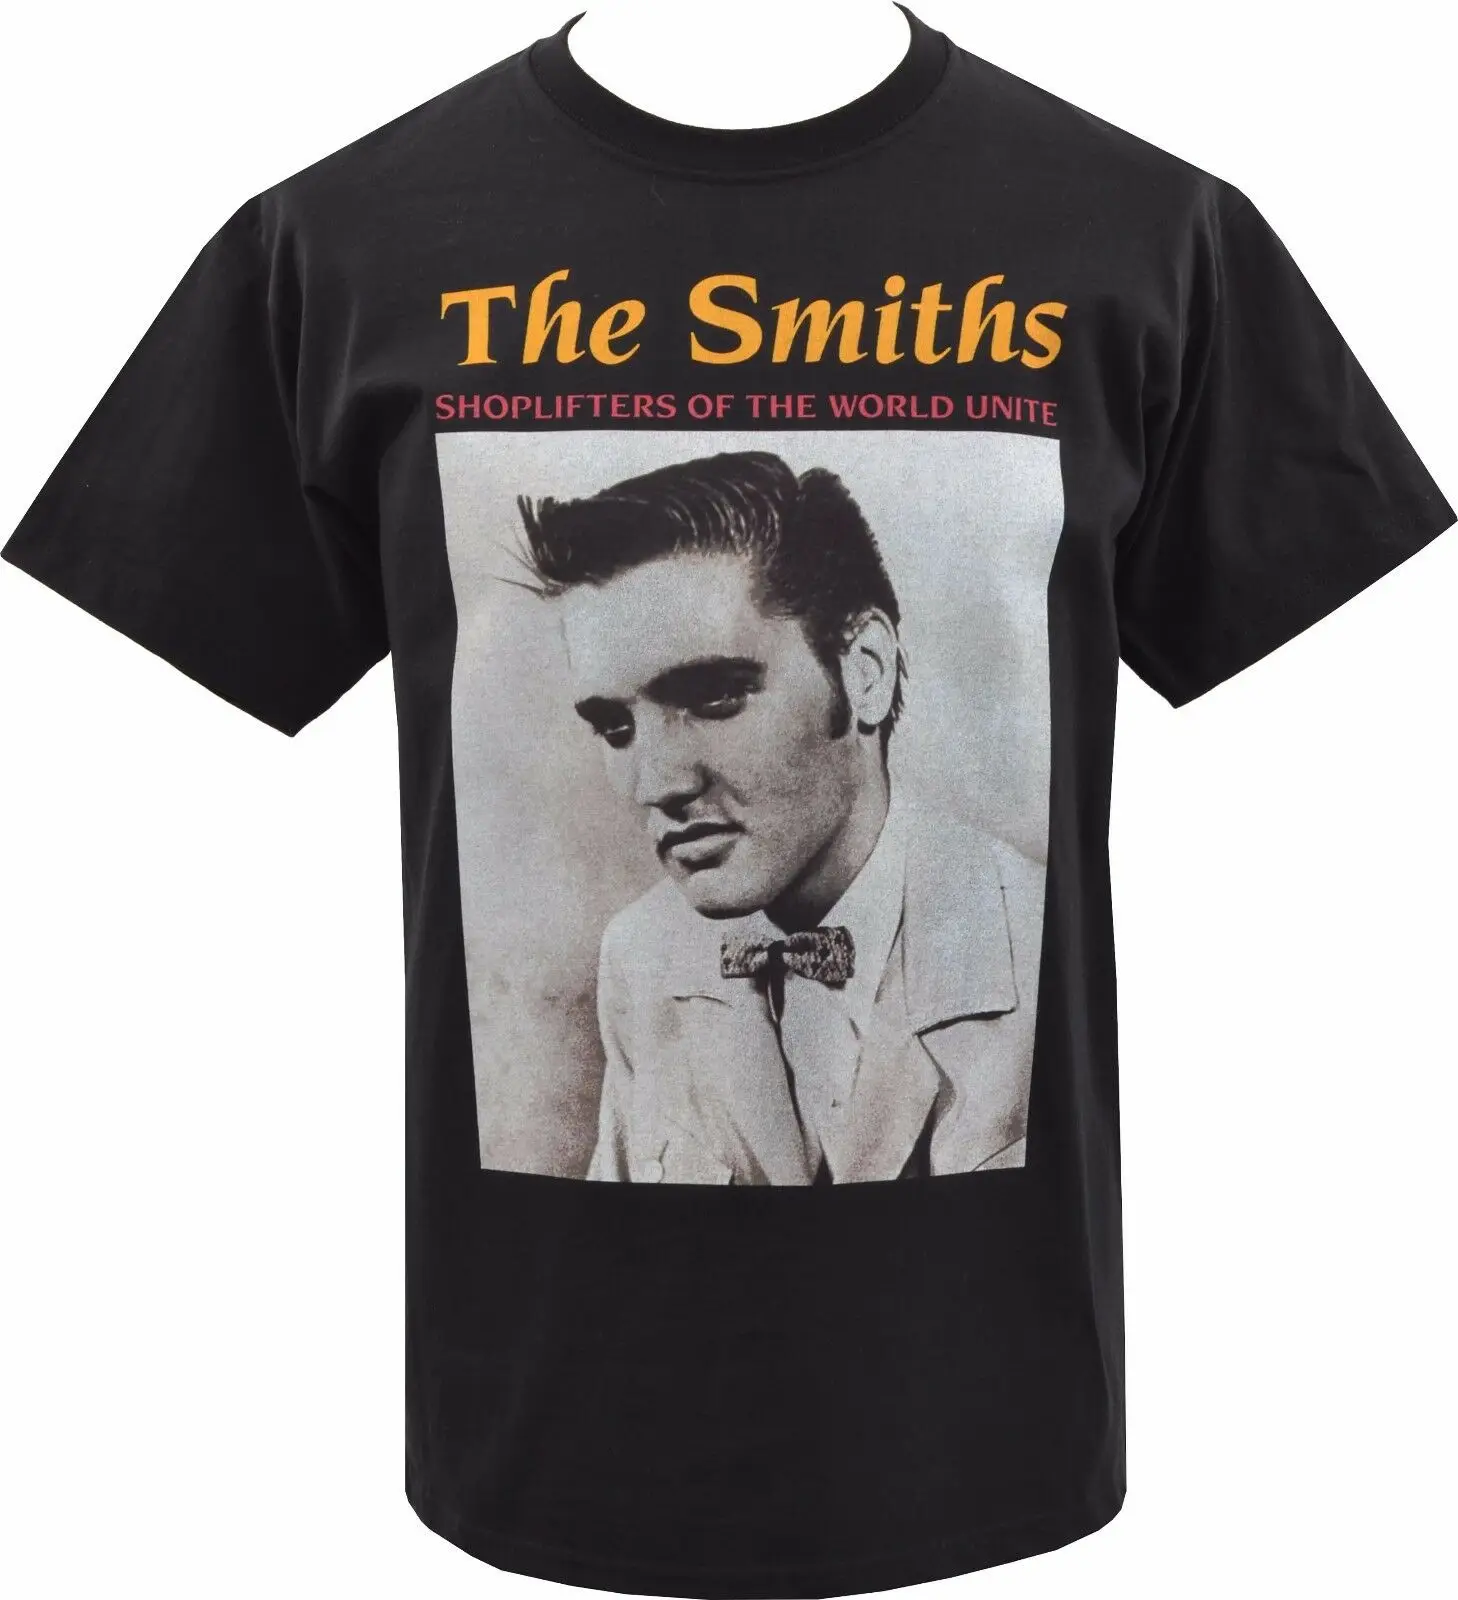 Мужская черная футболка THE SMITHS shoplifers ELVIS PRESLEY Британский MORRISSEY S-3XL Мужская и женская модная футболка унисекс бесплатная доставка